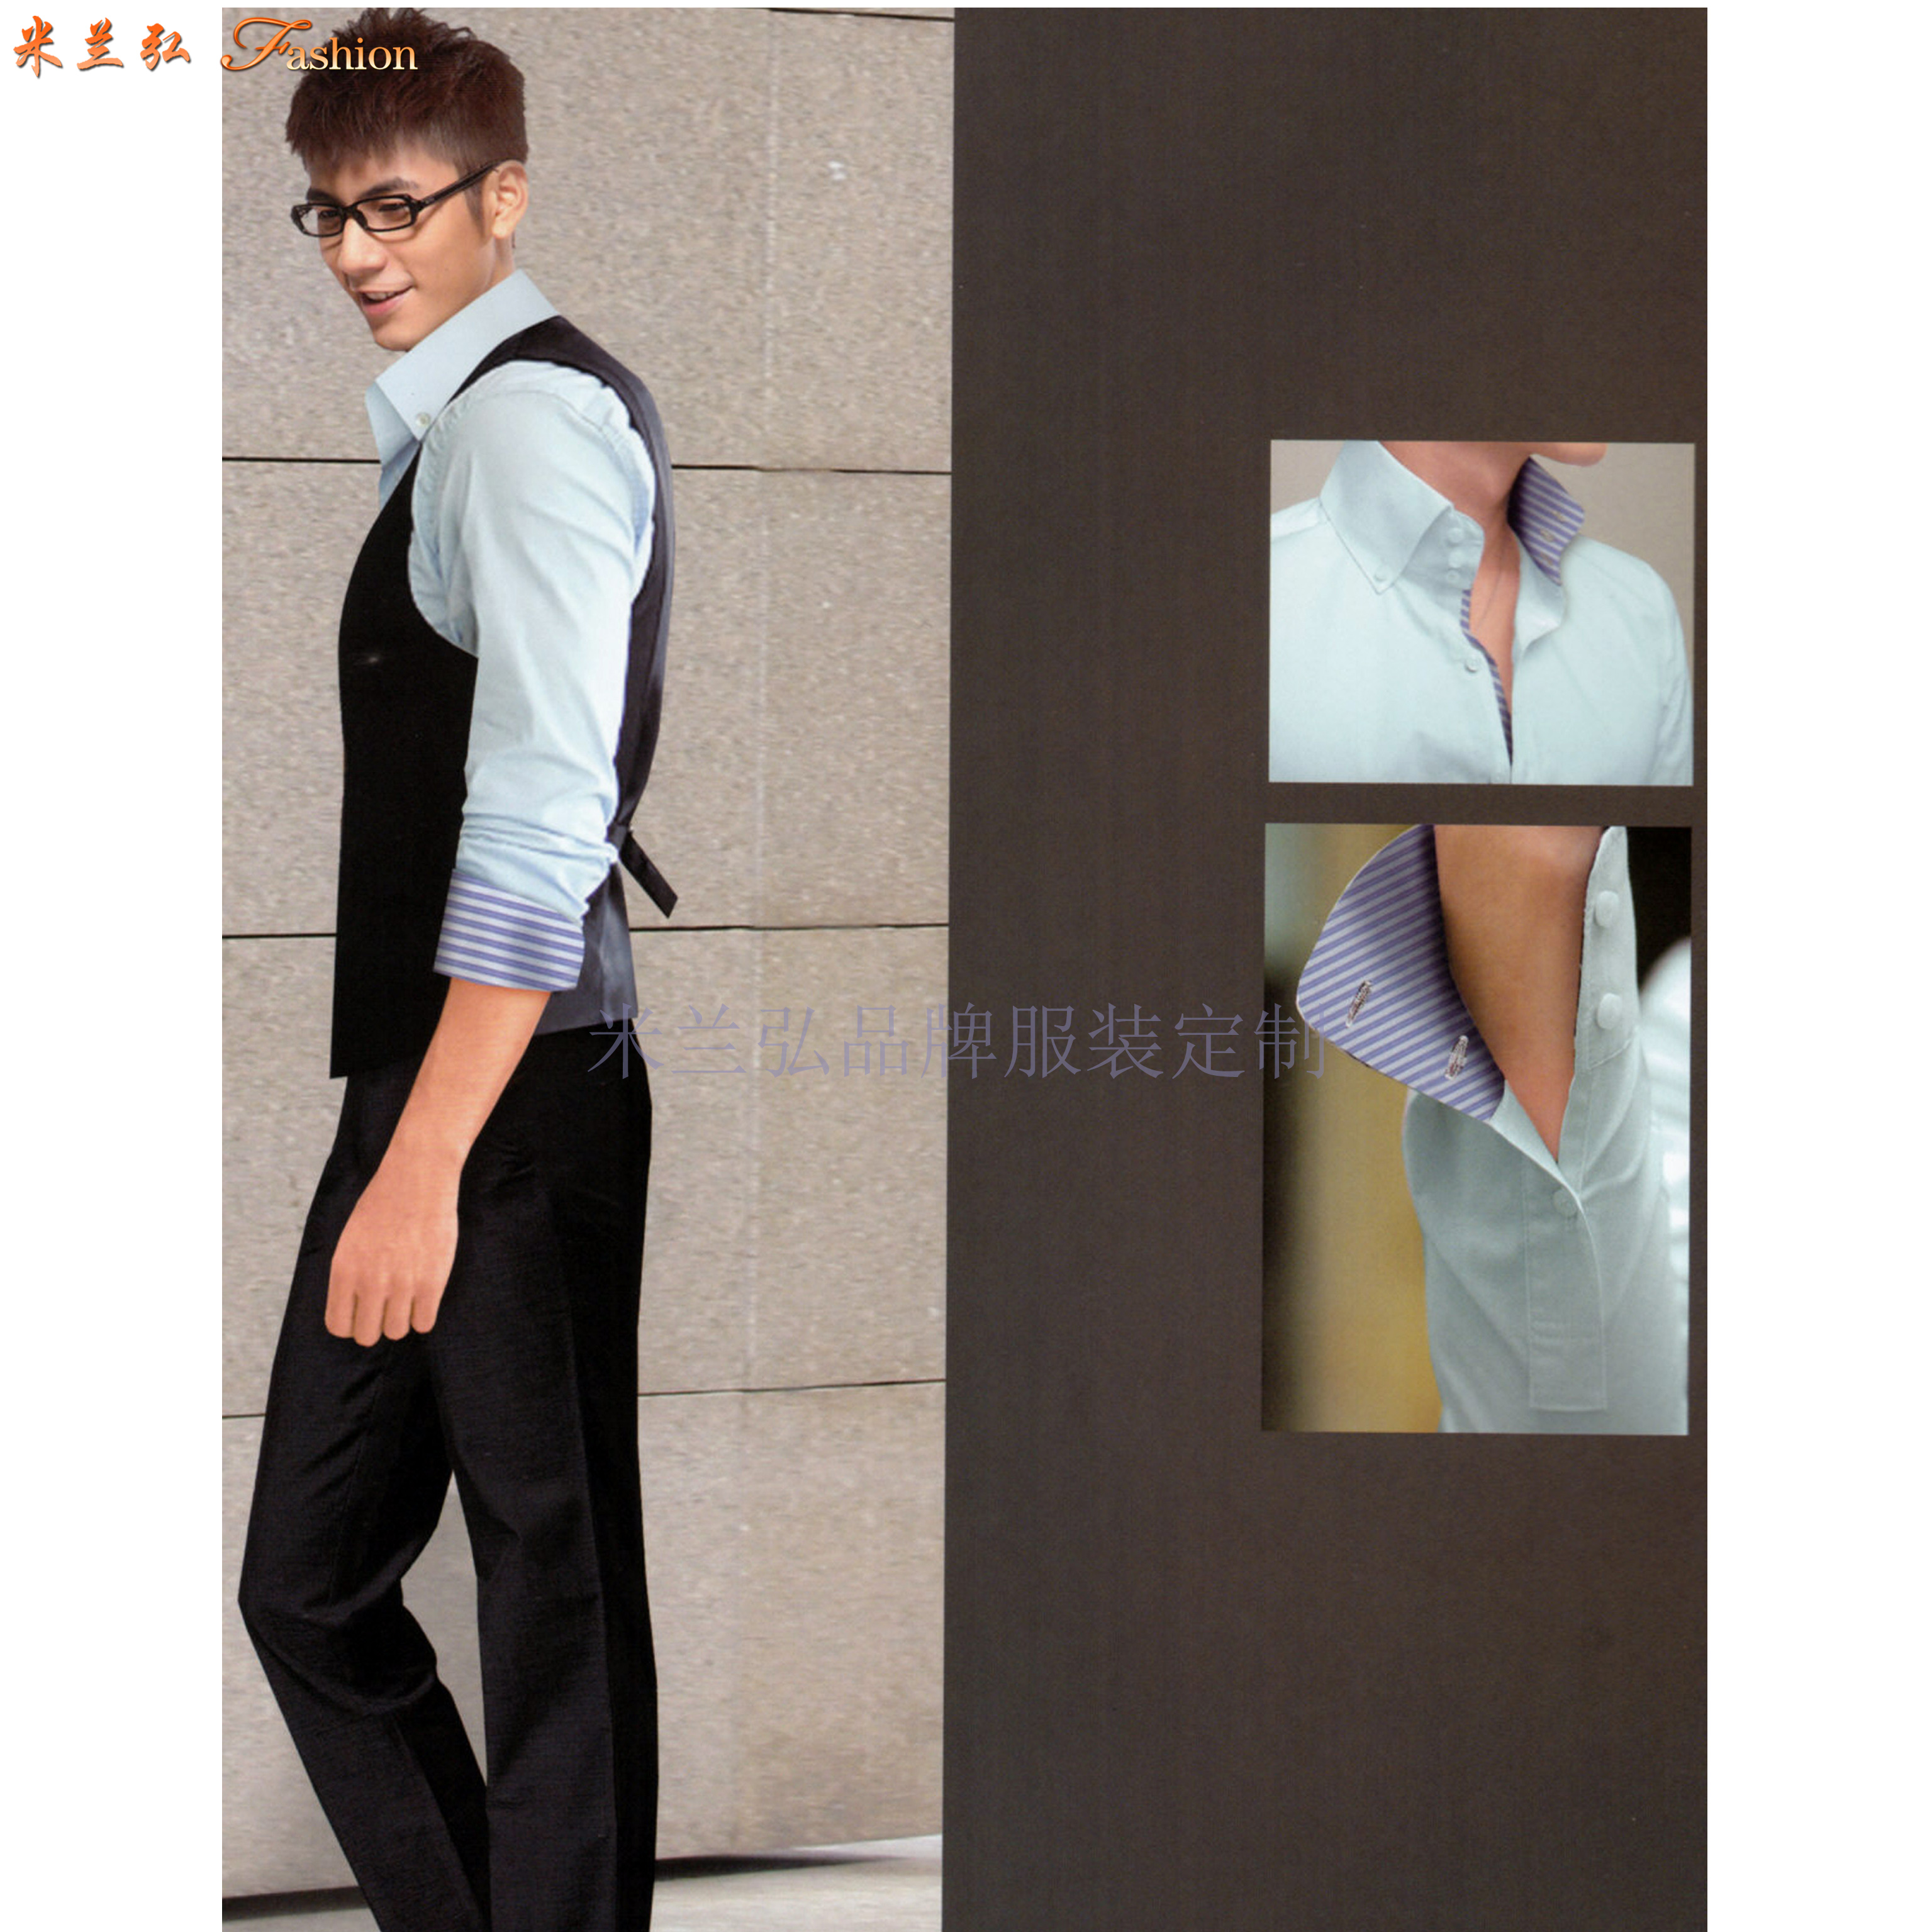 「北京西服定制圖片」男士西服搭配1外套1褲子-米蘭弘西服品牌-2